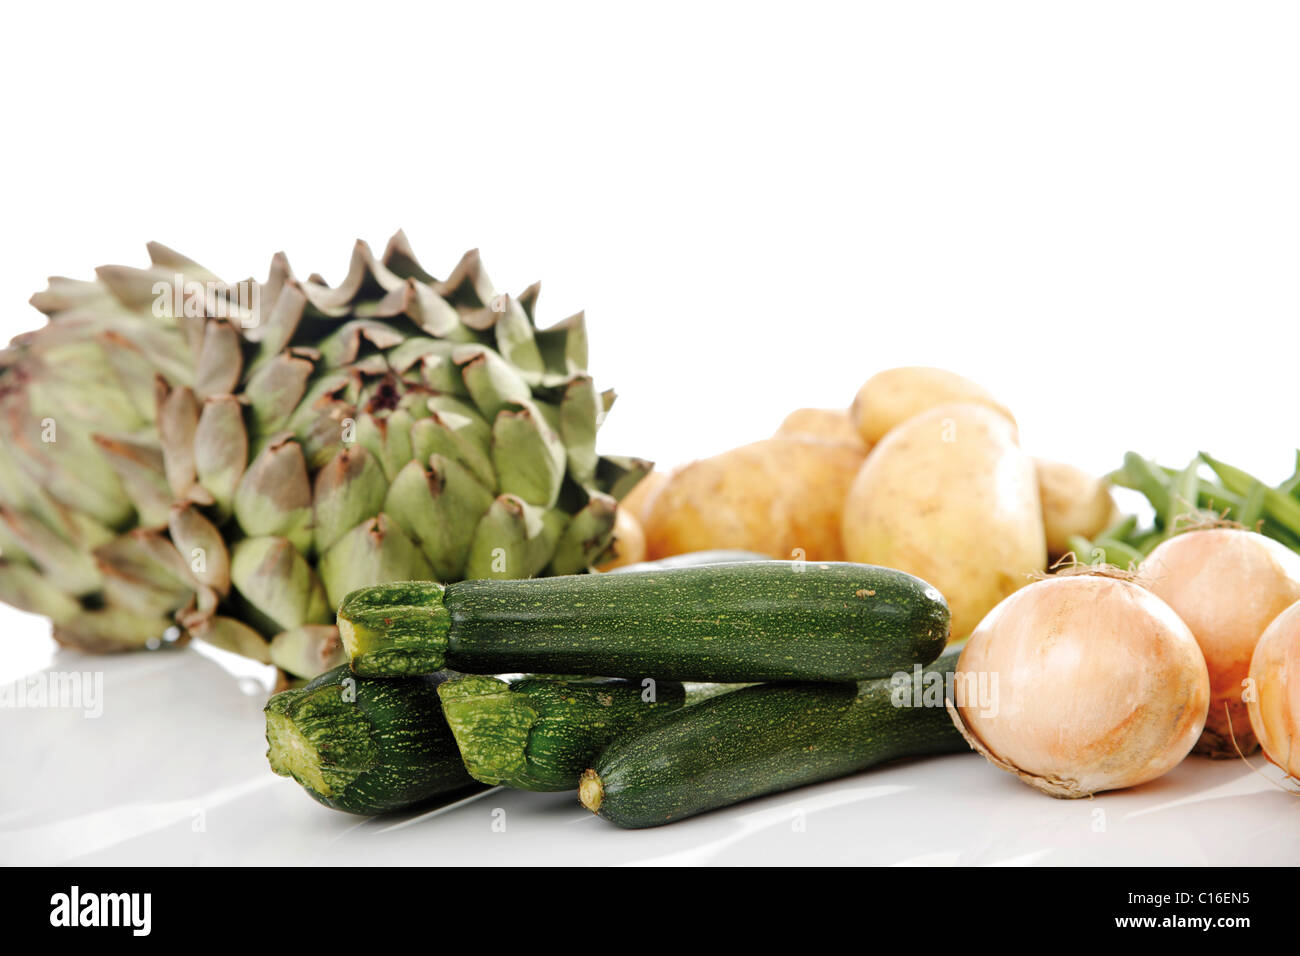 Mezcla de verduras, alcachofas, calabacines, patatas y cebollas. Foto de stock